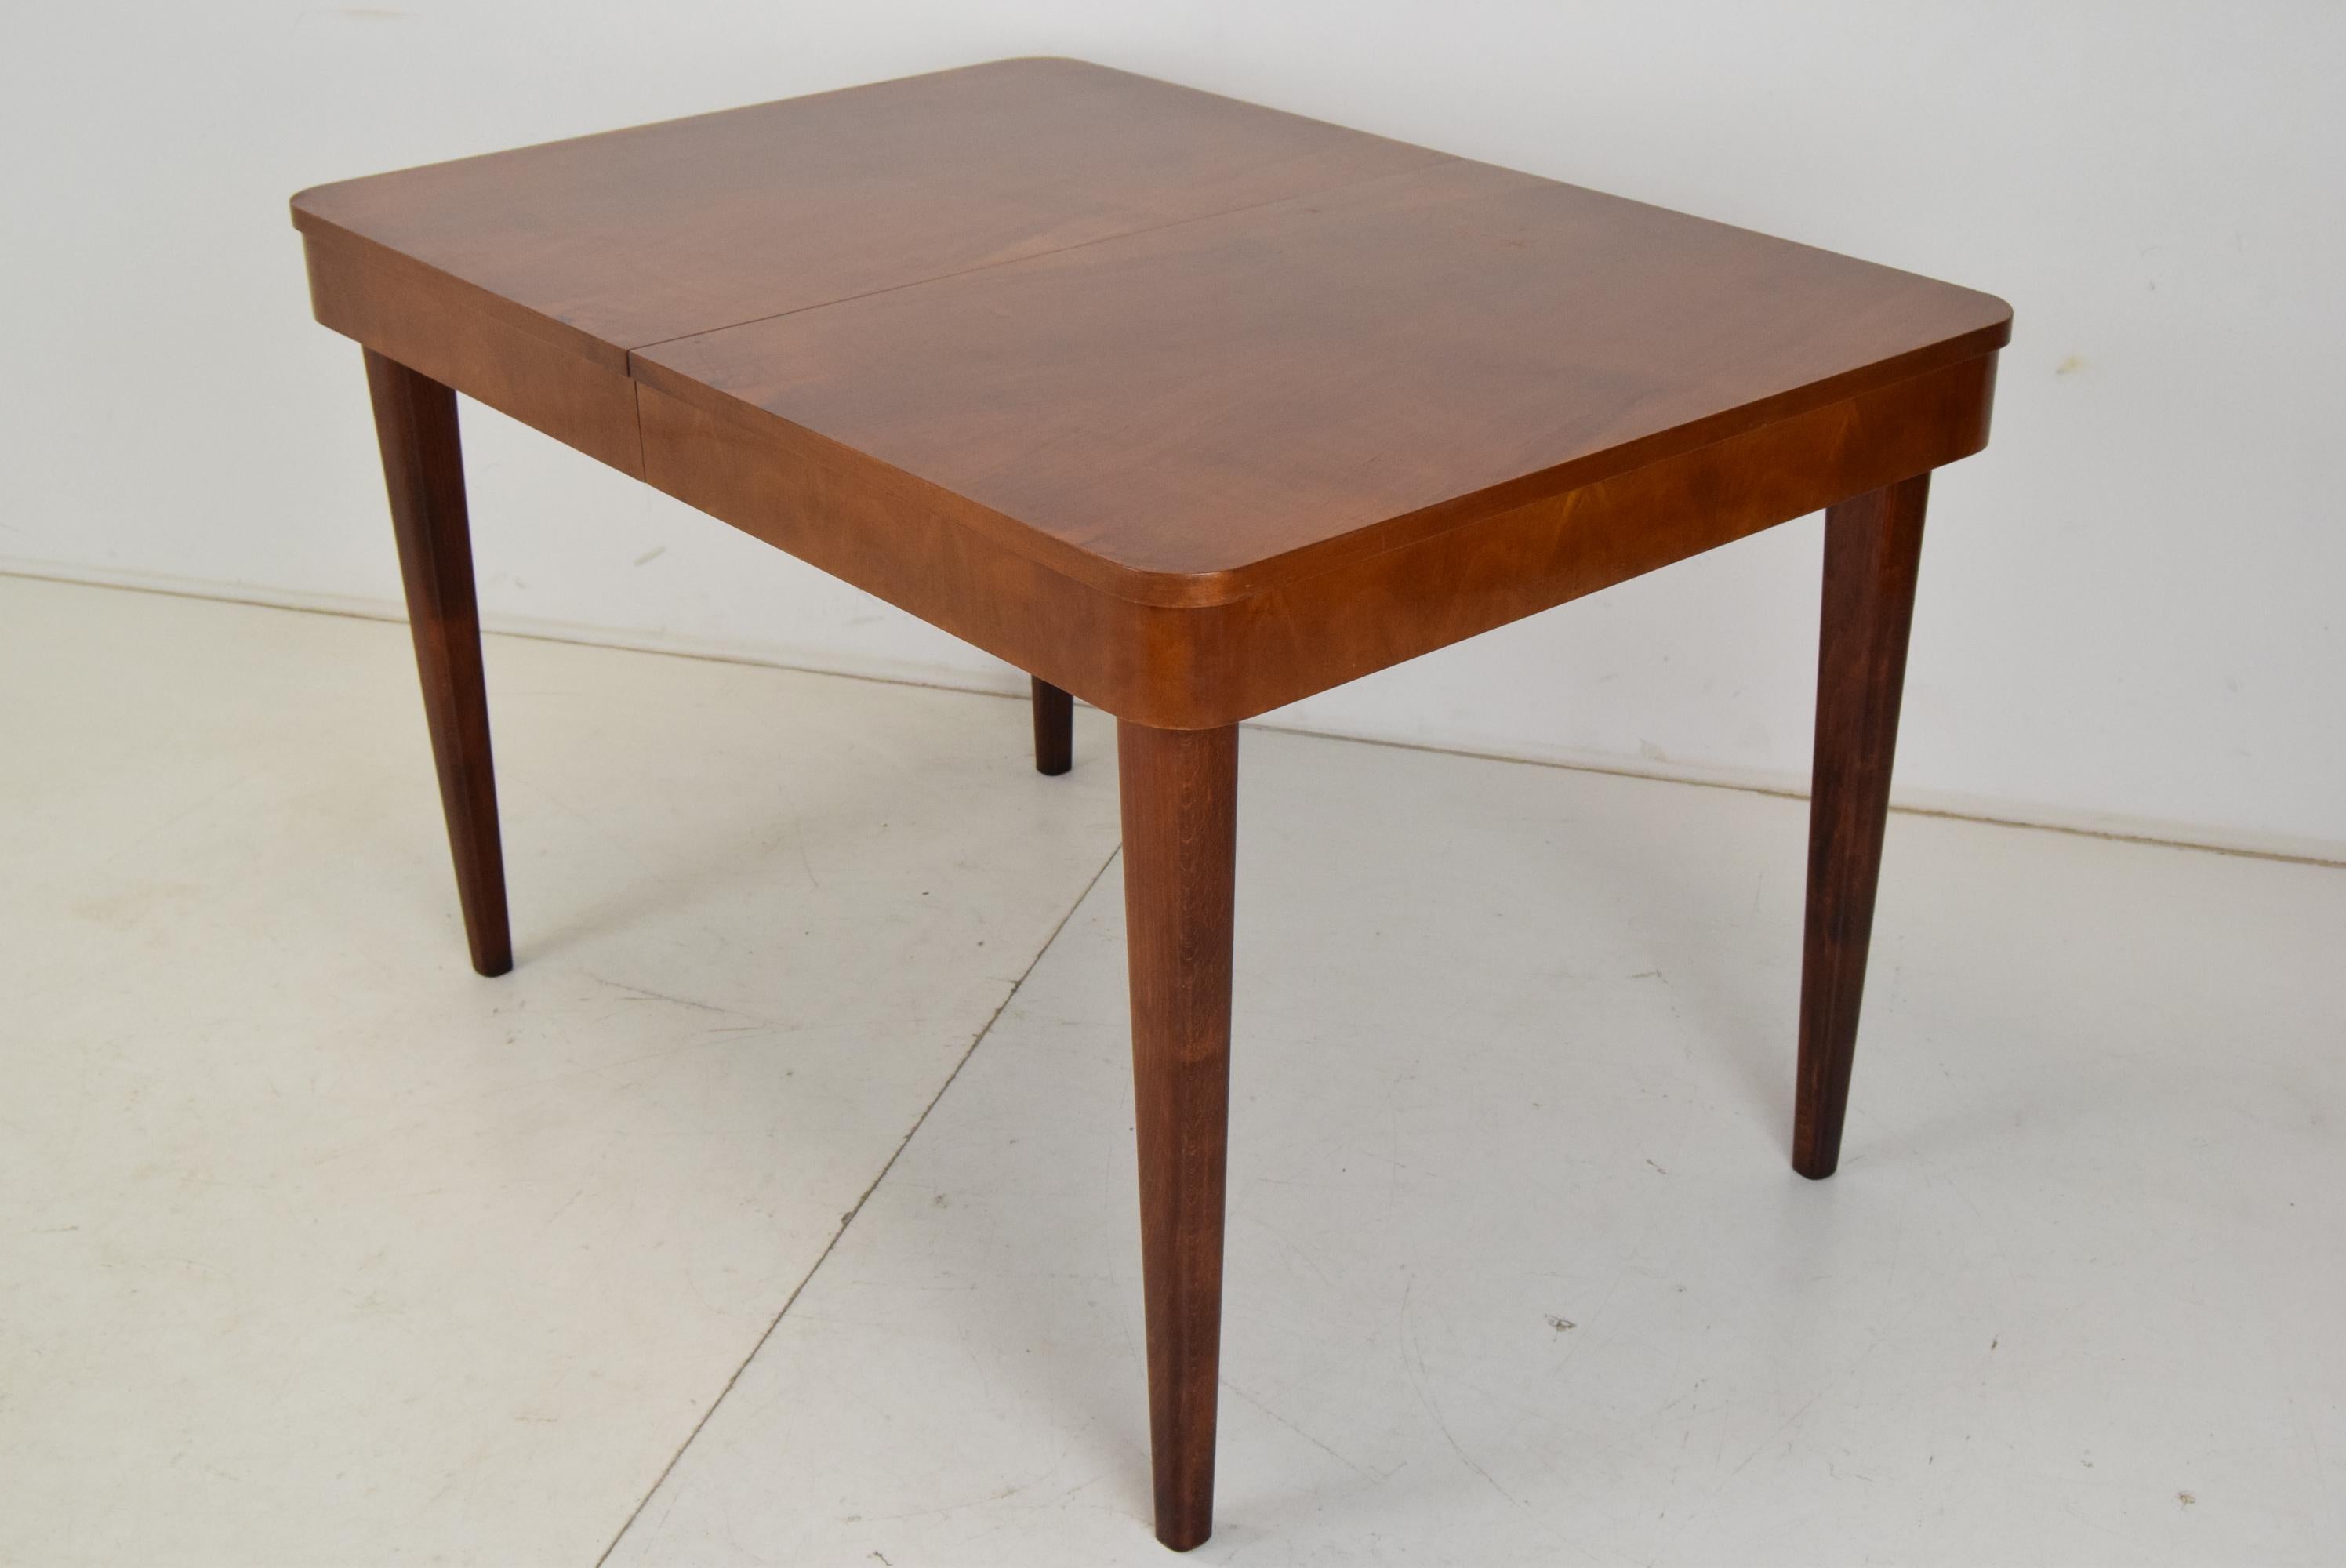 
Hergestellt in der Tschechoslowakei
Hergestellt aus Holz
Dimension der ausziehbaren Breite 190cm
Die Tischbeine sind abnehmbar
Ursprünglicher Zustand.